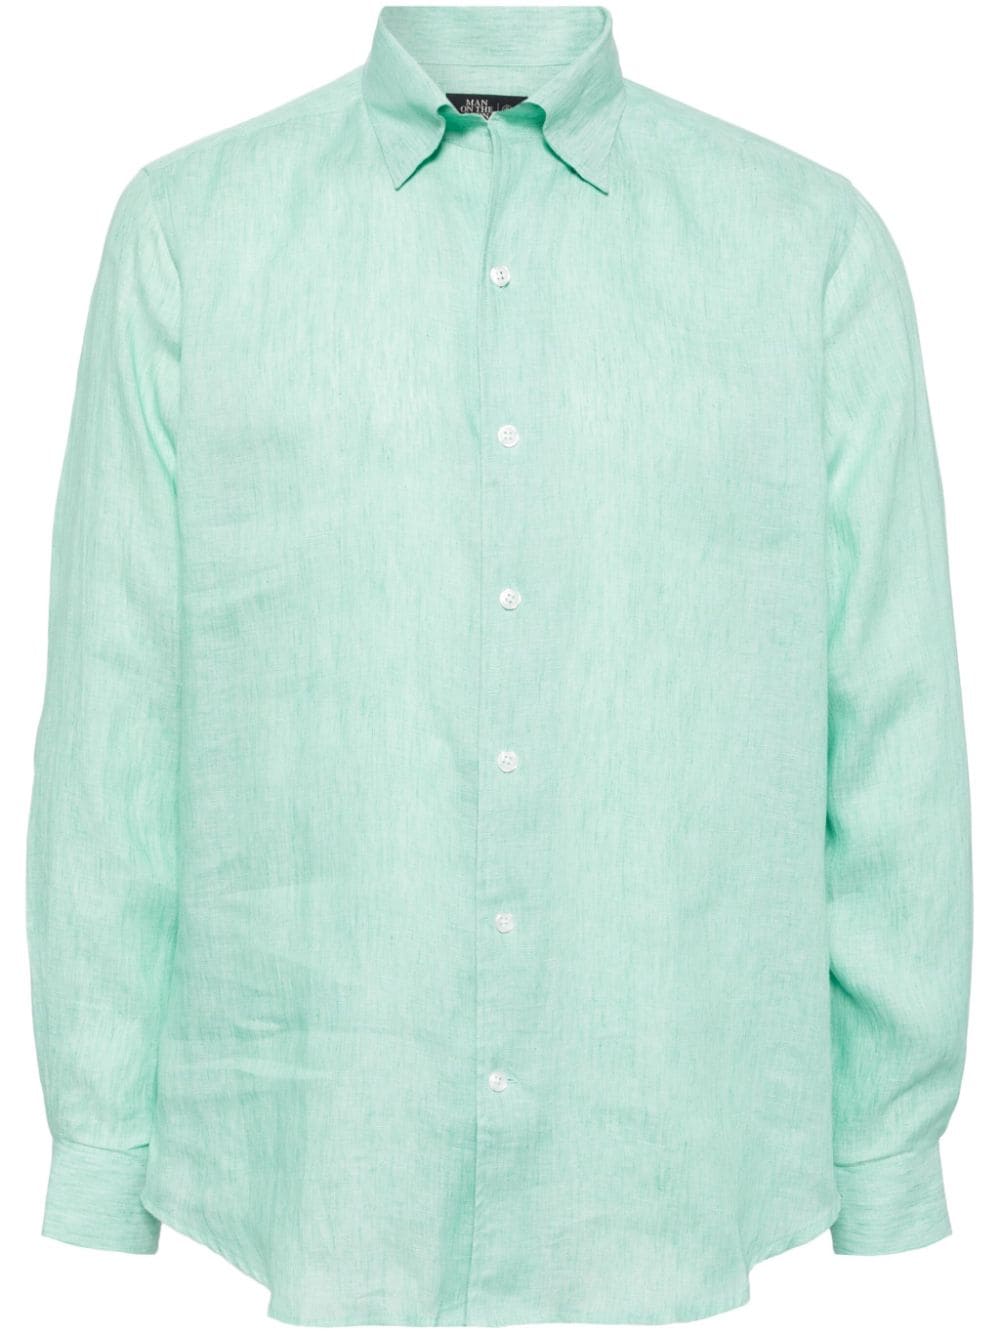 Man On The Boon. buttoned hemp shirt - Green